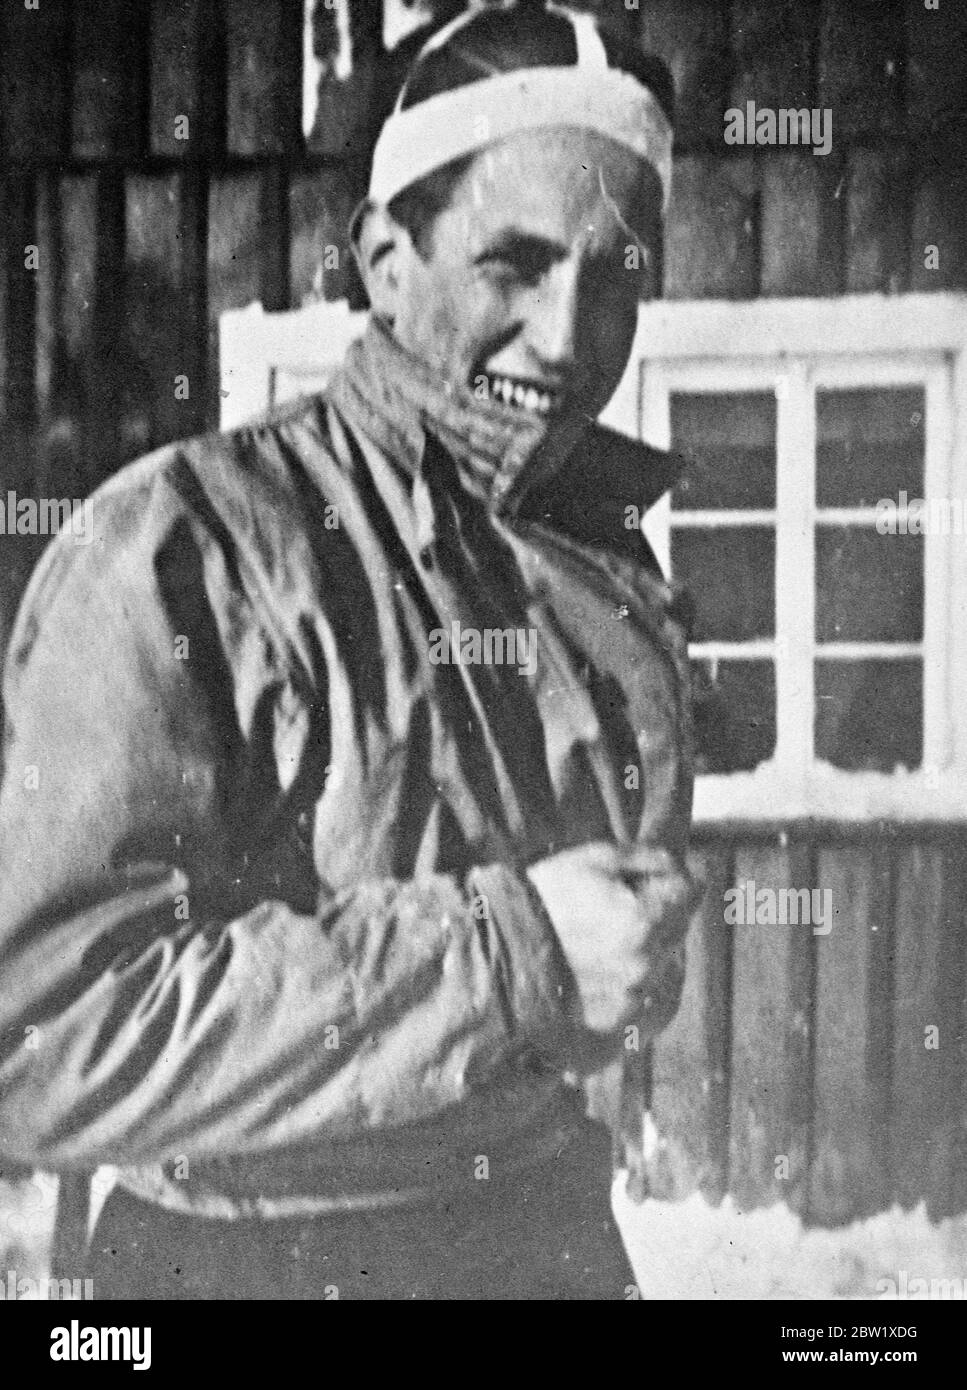 Troisième homme d'aviation allemand condamné à mort par les Basques. Hans Joachim Wandel, l'aviateur allemand qui a été capturé quand sa machine s'est écrasée sur le front basque, a été condamné à mort à Bilbao. Il est le troisième aviateur allemand à avoir reçu la peine de mort. Wandel a été accusé d'avoir aidé à la rébellion. Photos: Hans Joachim Wandel après son arrestation par les Basques. 26 mai 1937 Banque D'Images